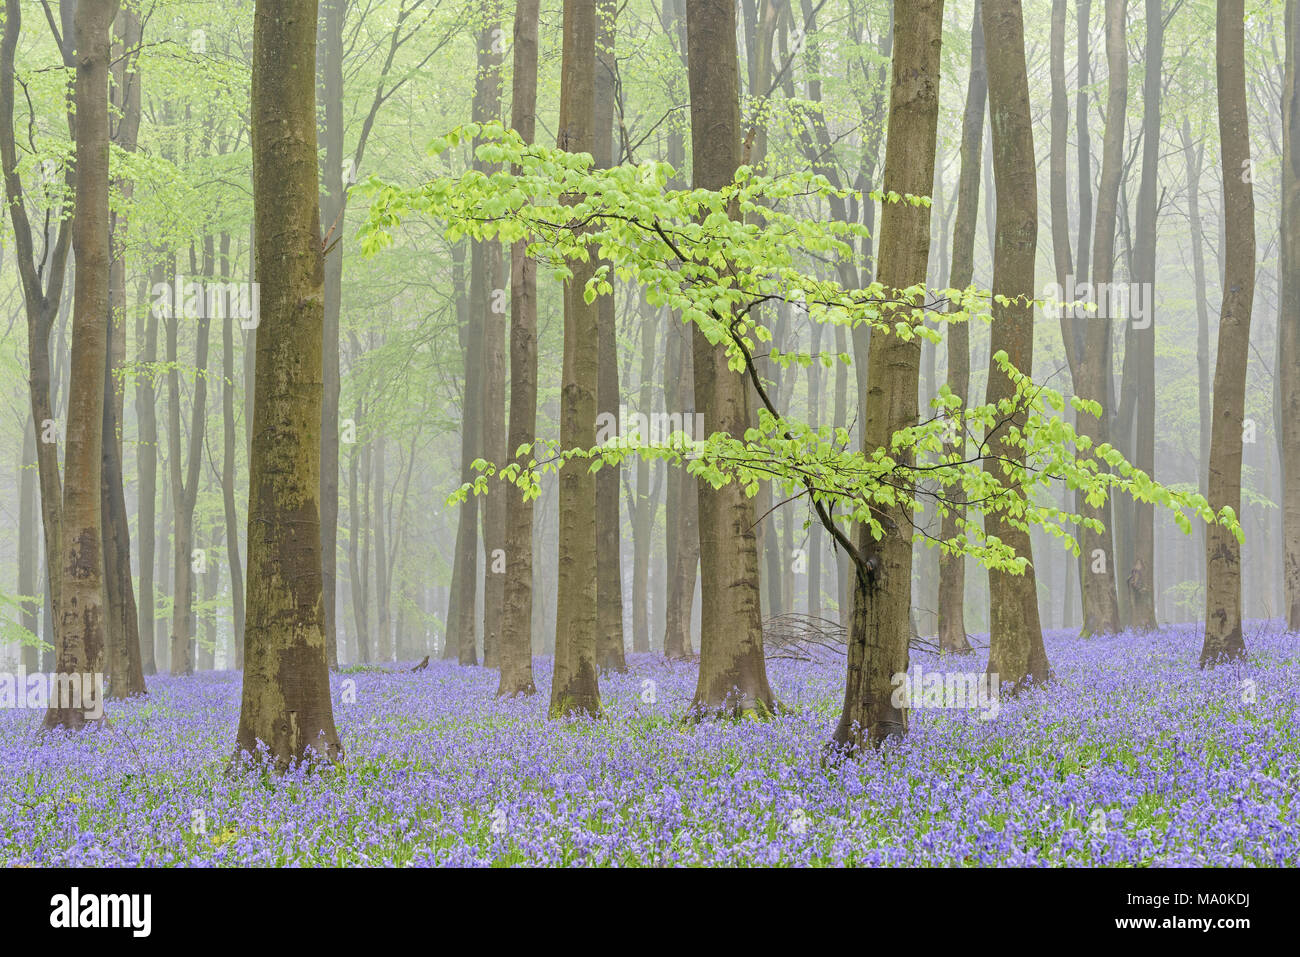 1 Maggio in una nebbiosa Bluebell riempito Hampshire legno, le nuove foglie verdi sulla bassa fronda di un primo piano faggio dare il bosco una fresca feeli Foto Stock